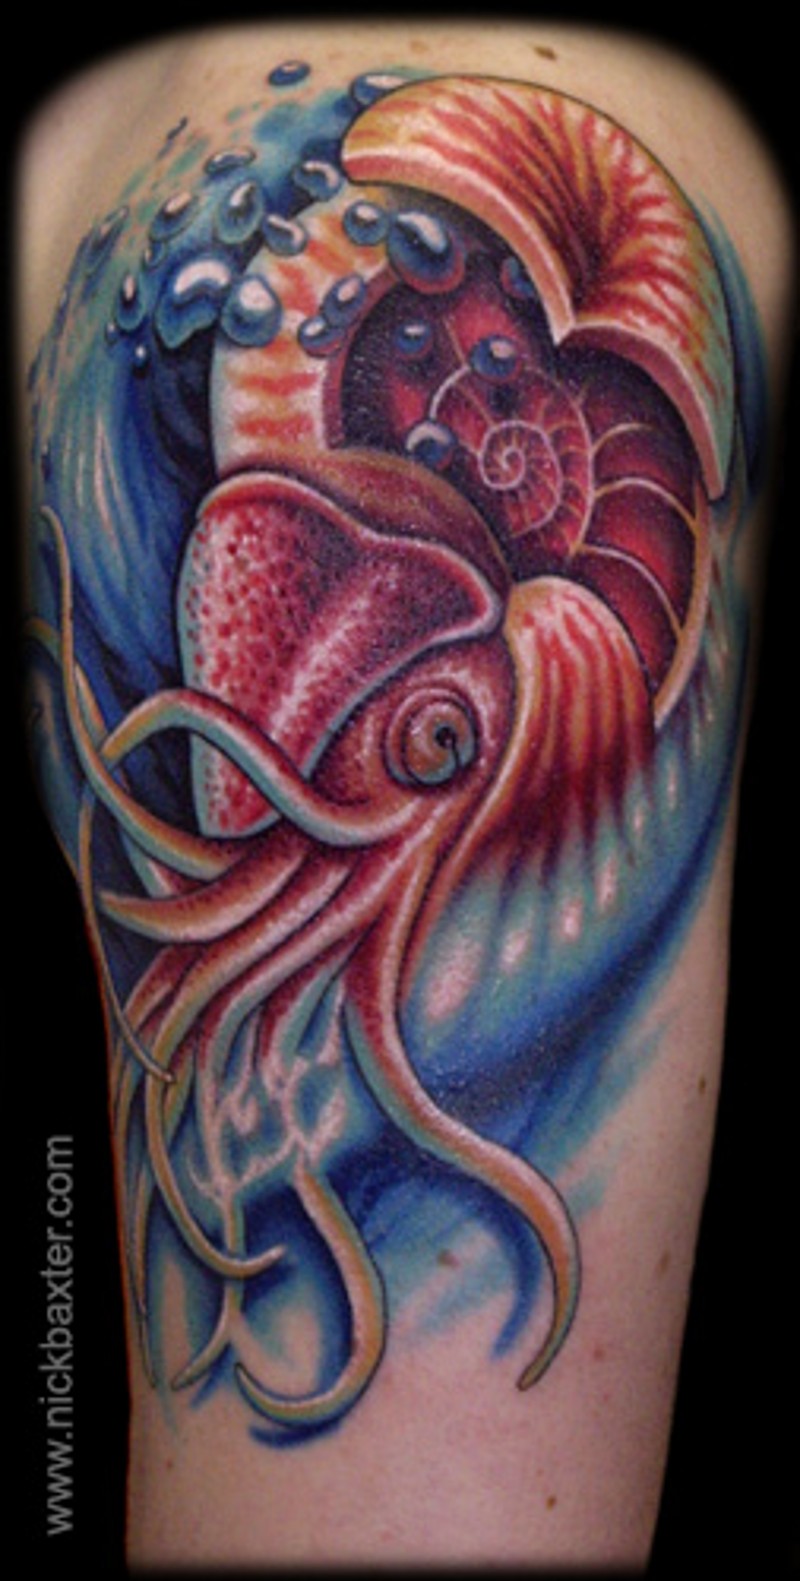 Schönes detailliertes mehrfarbiges Bein Tattoo mit coolem Tintenfisch in Gewässern